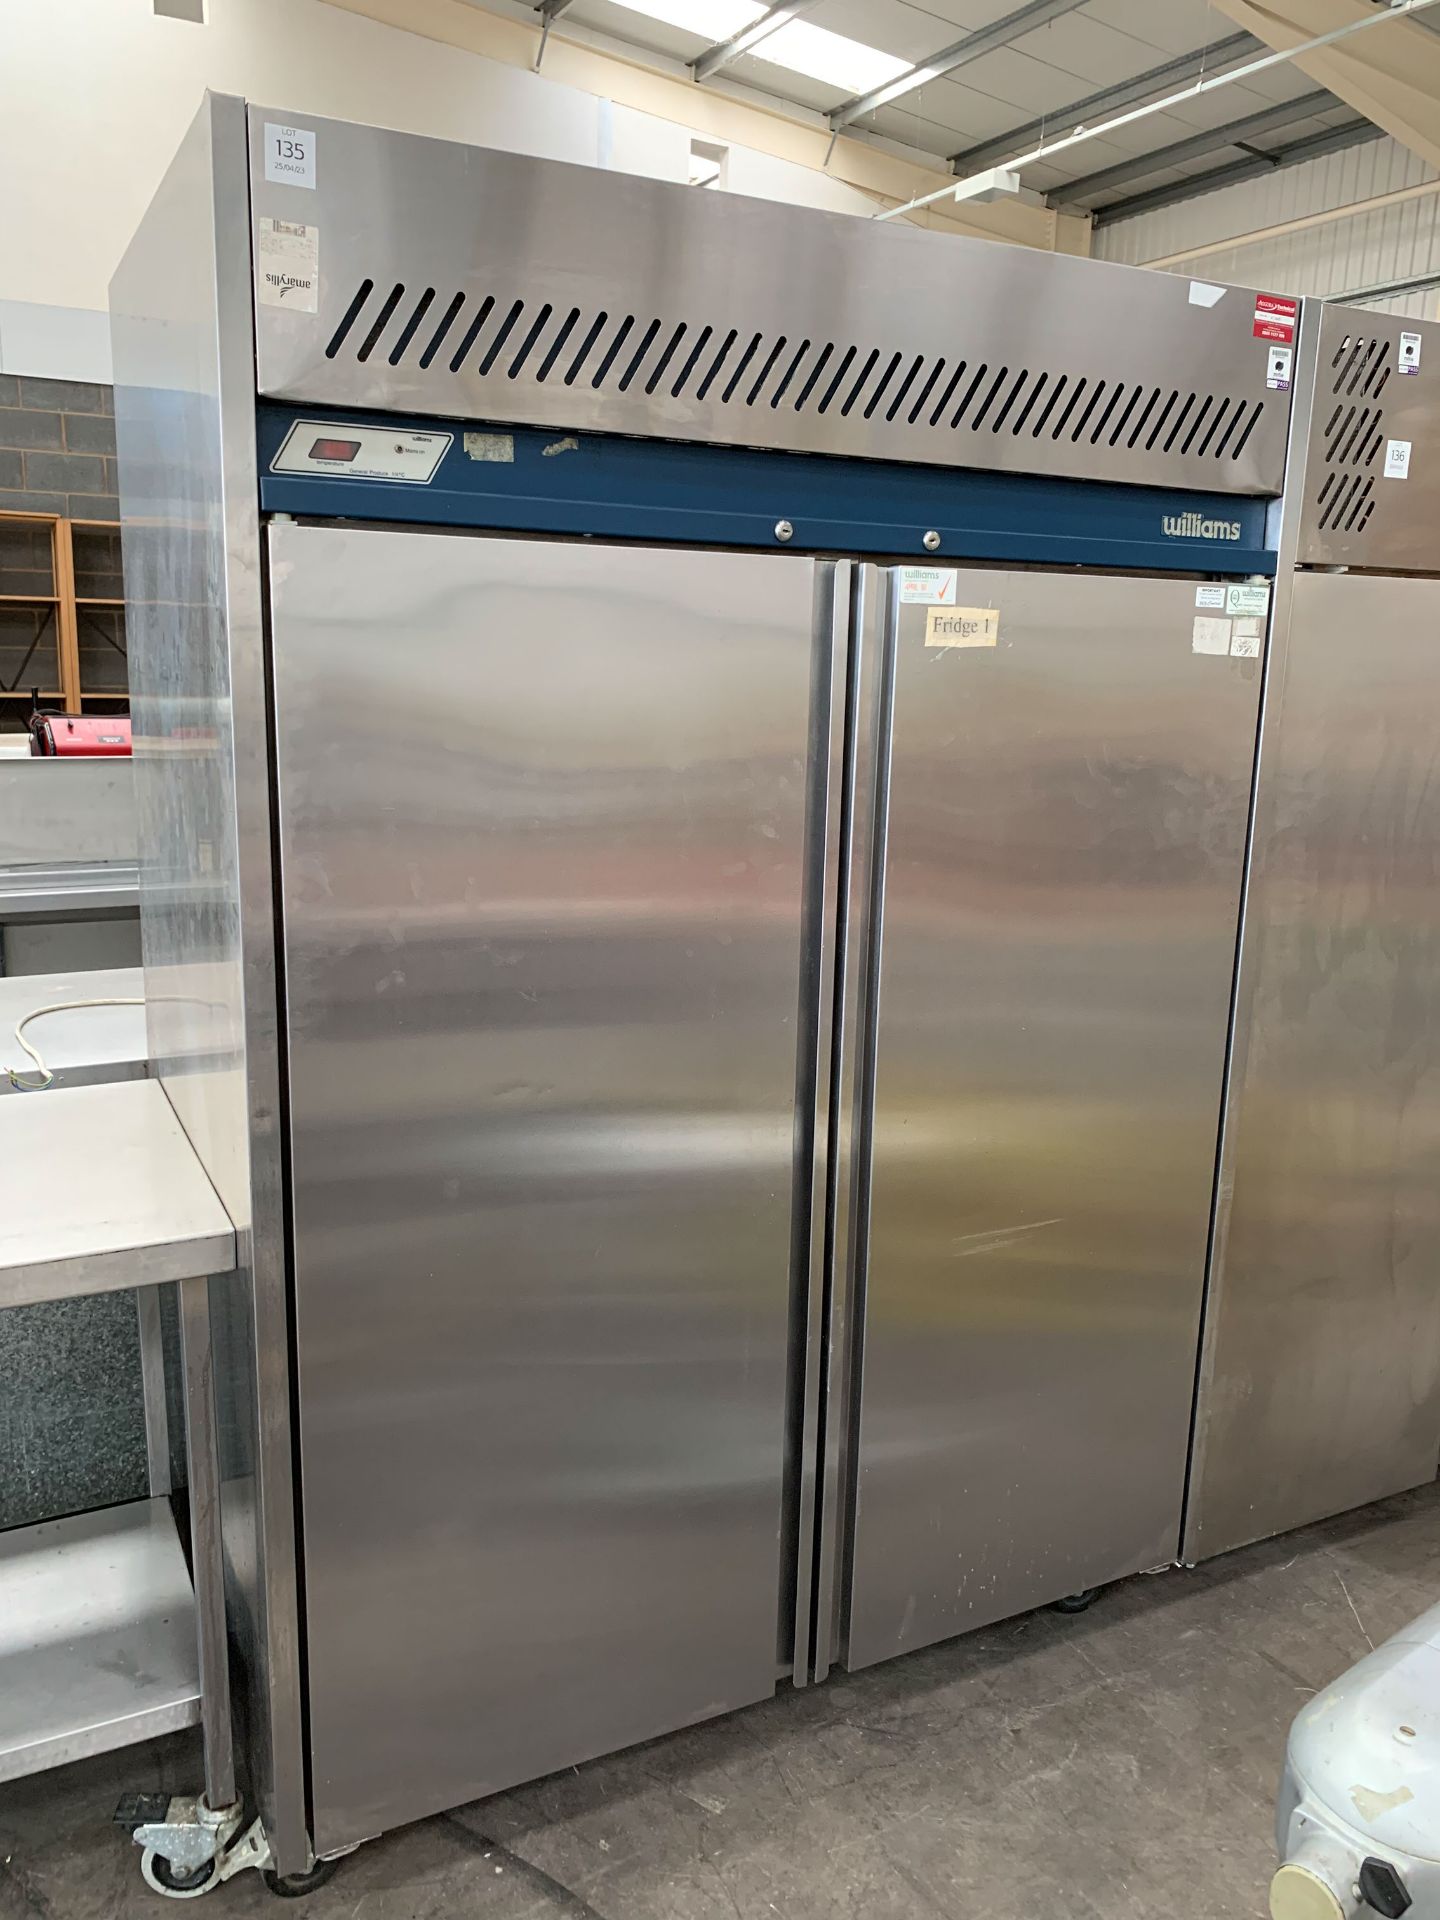 Williams 'HG2T Garnet' Commercial 2-door Refrigerator